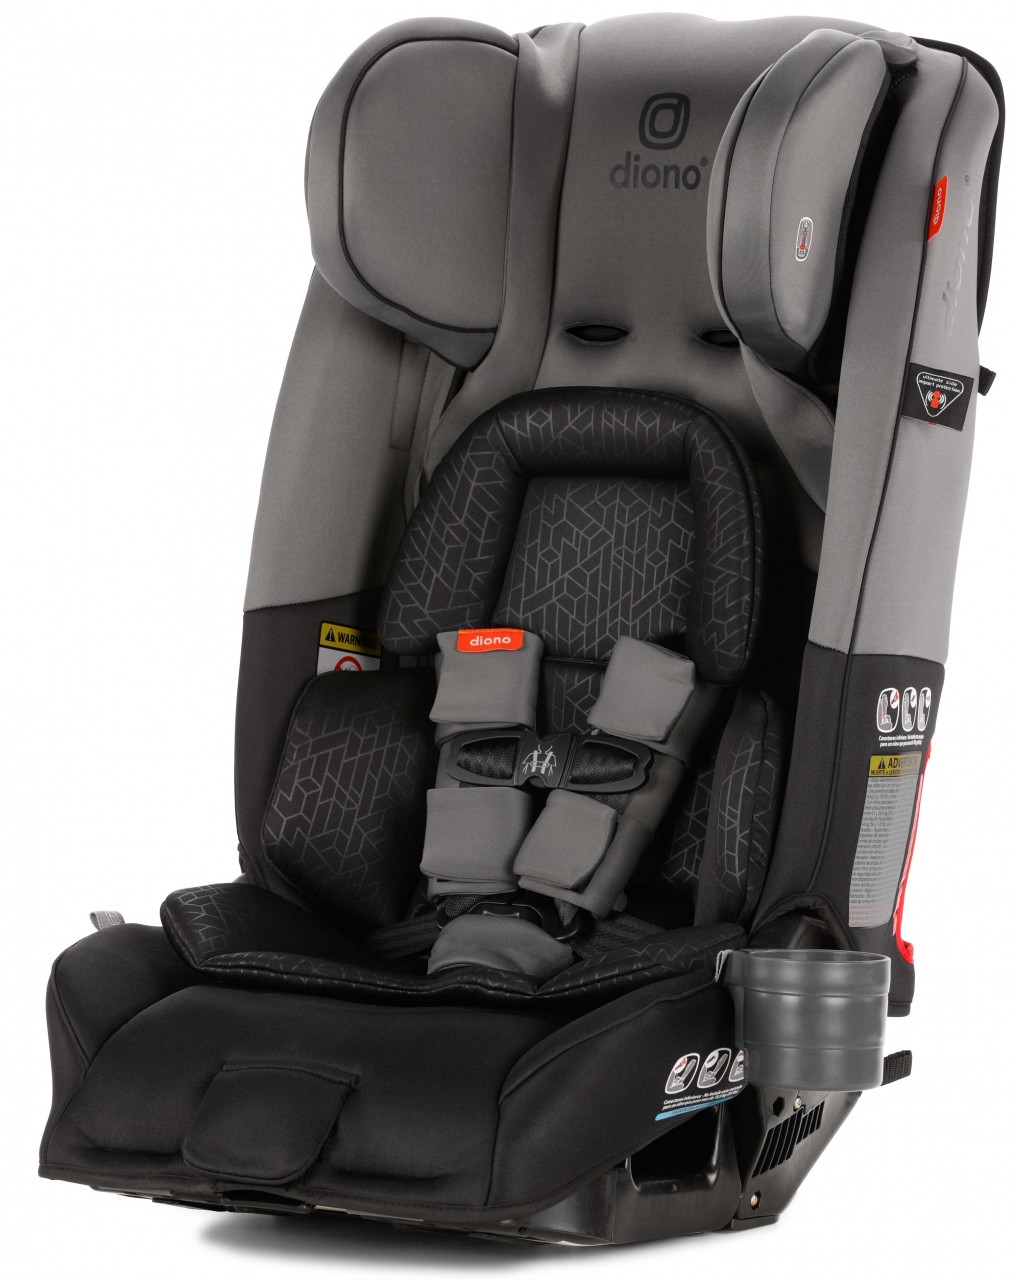 narrow newborn car seat